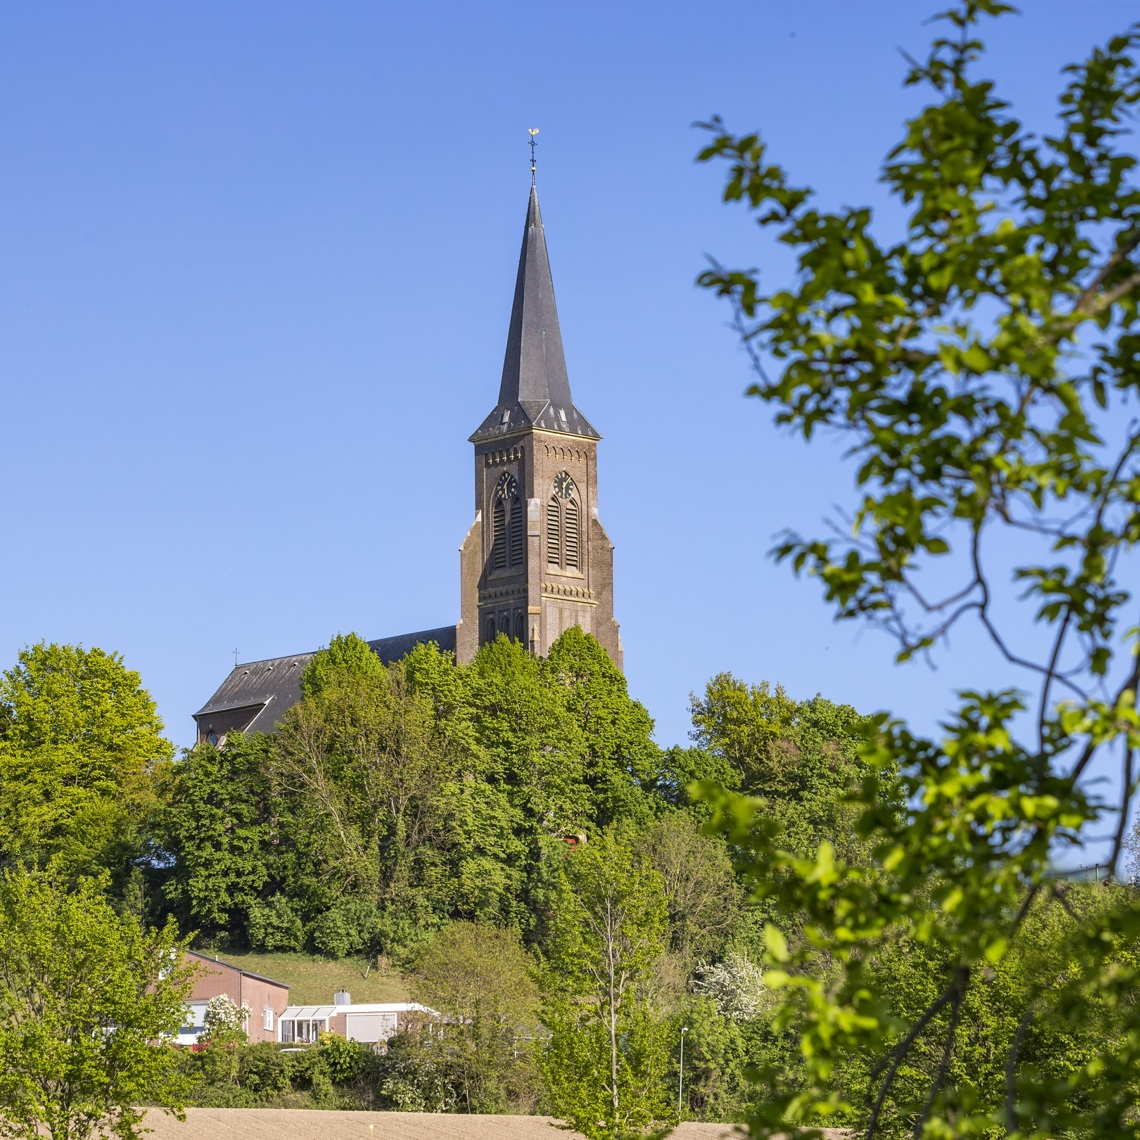 De kerk van Vijlen die boven de groene natuur pronkt